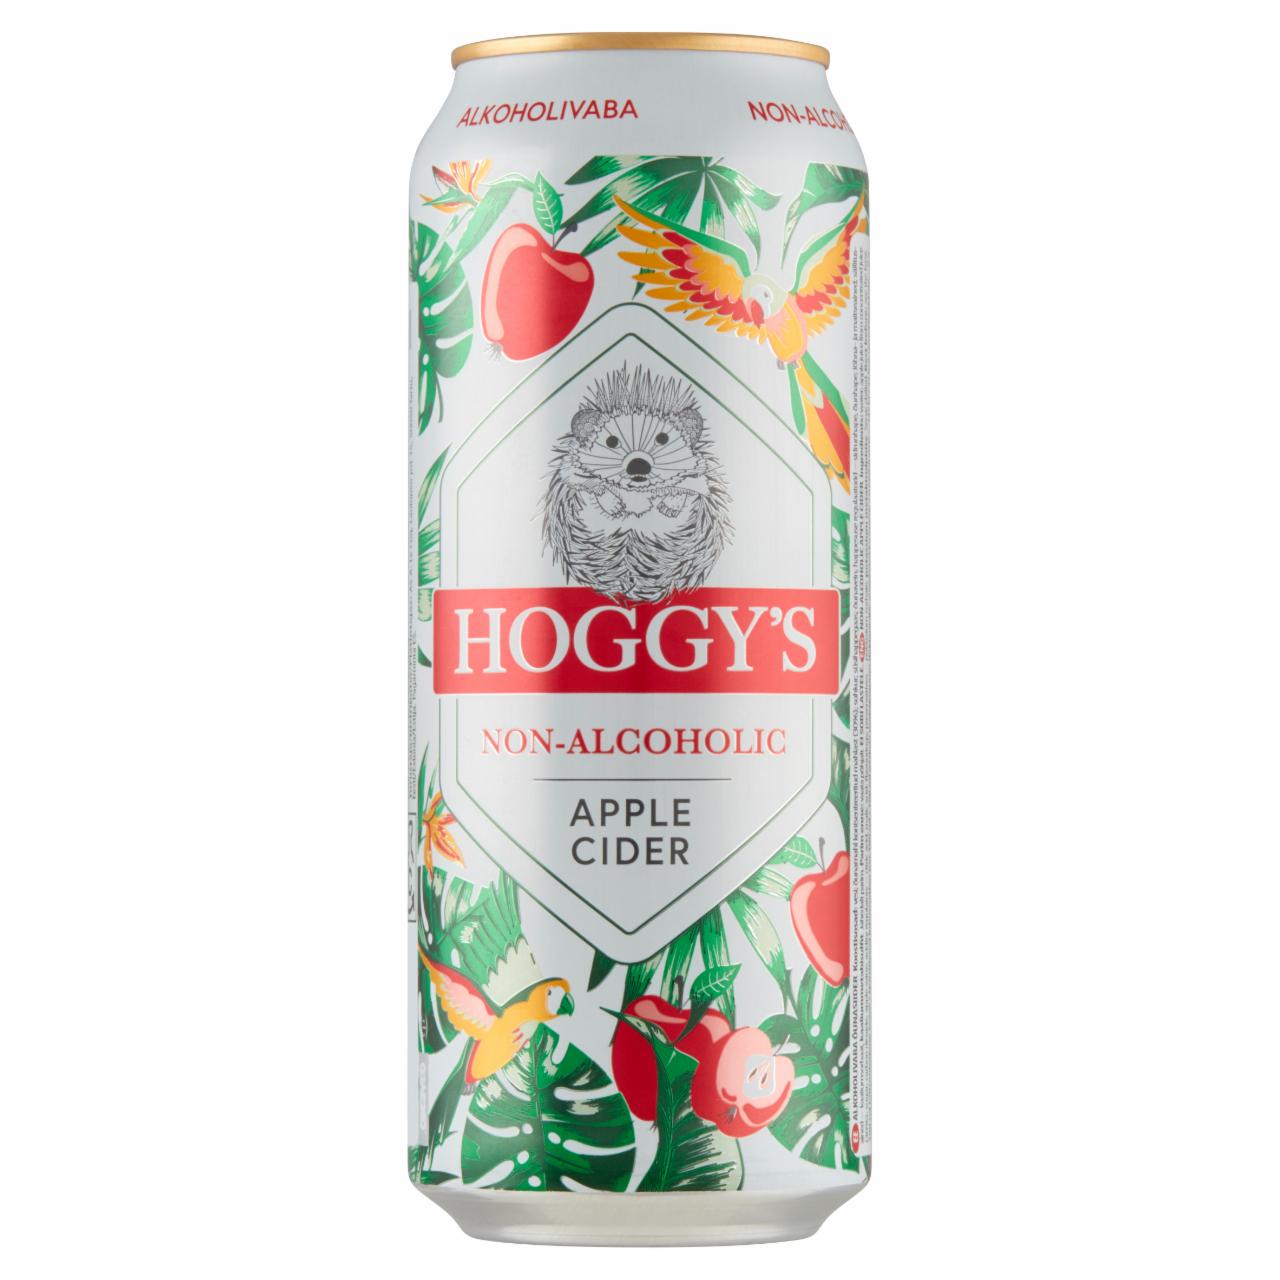 Képek - Hoggy's alkoholmentes szénsavas alma cider 0,5 l